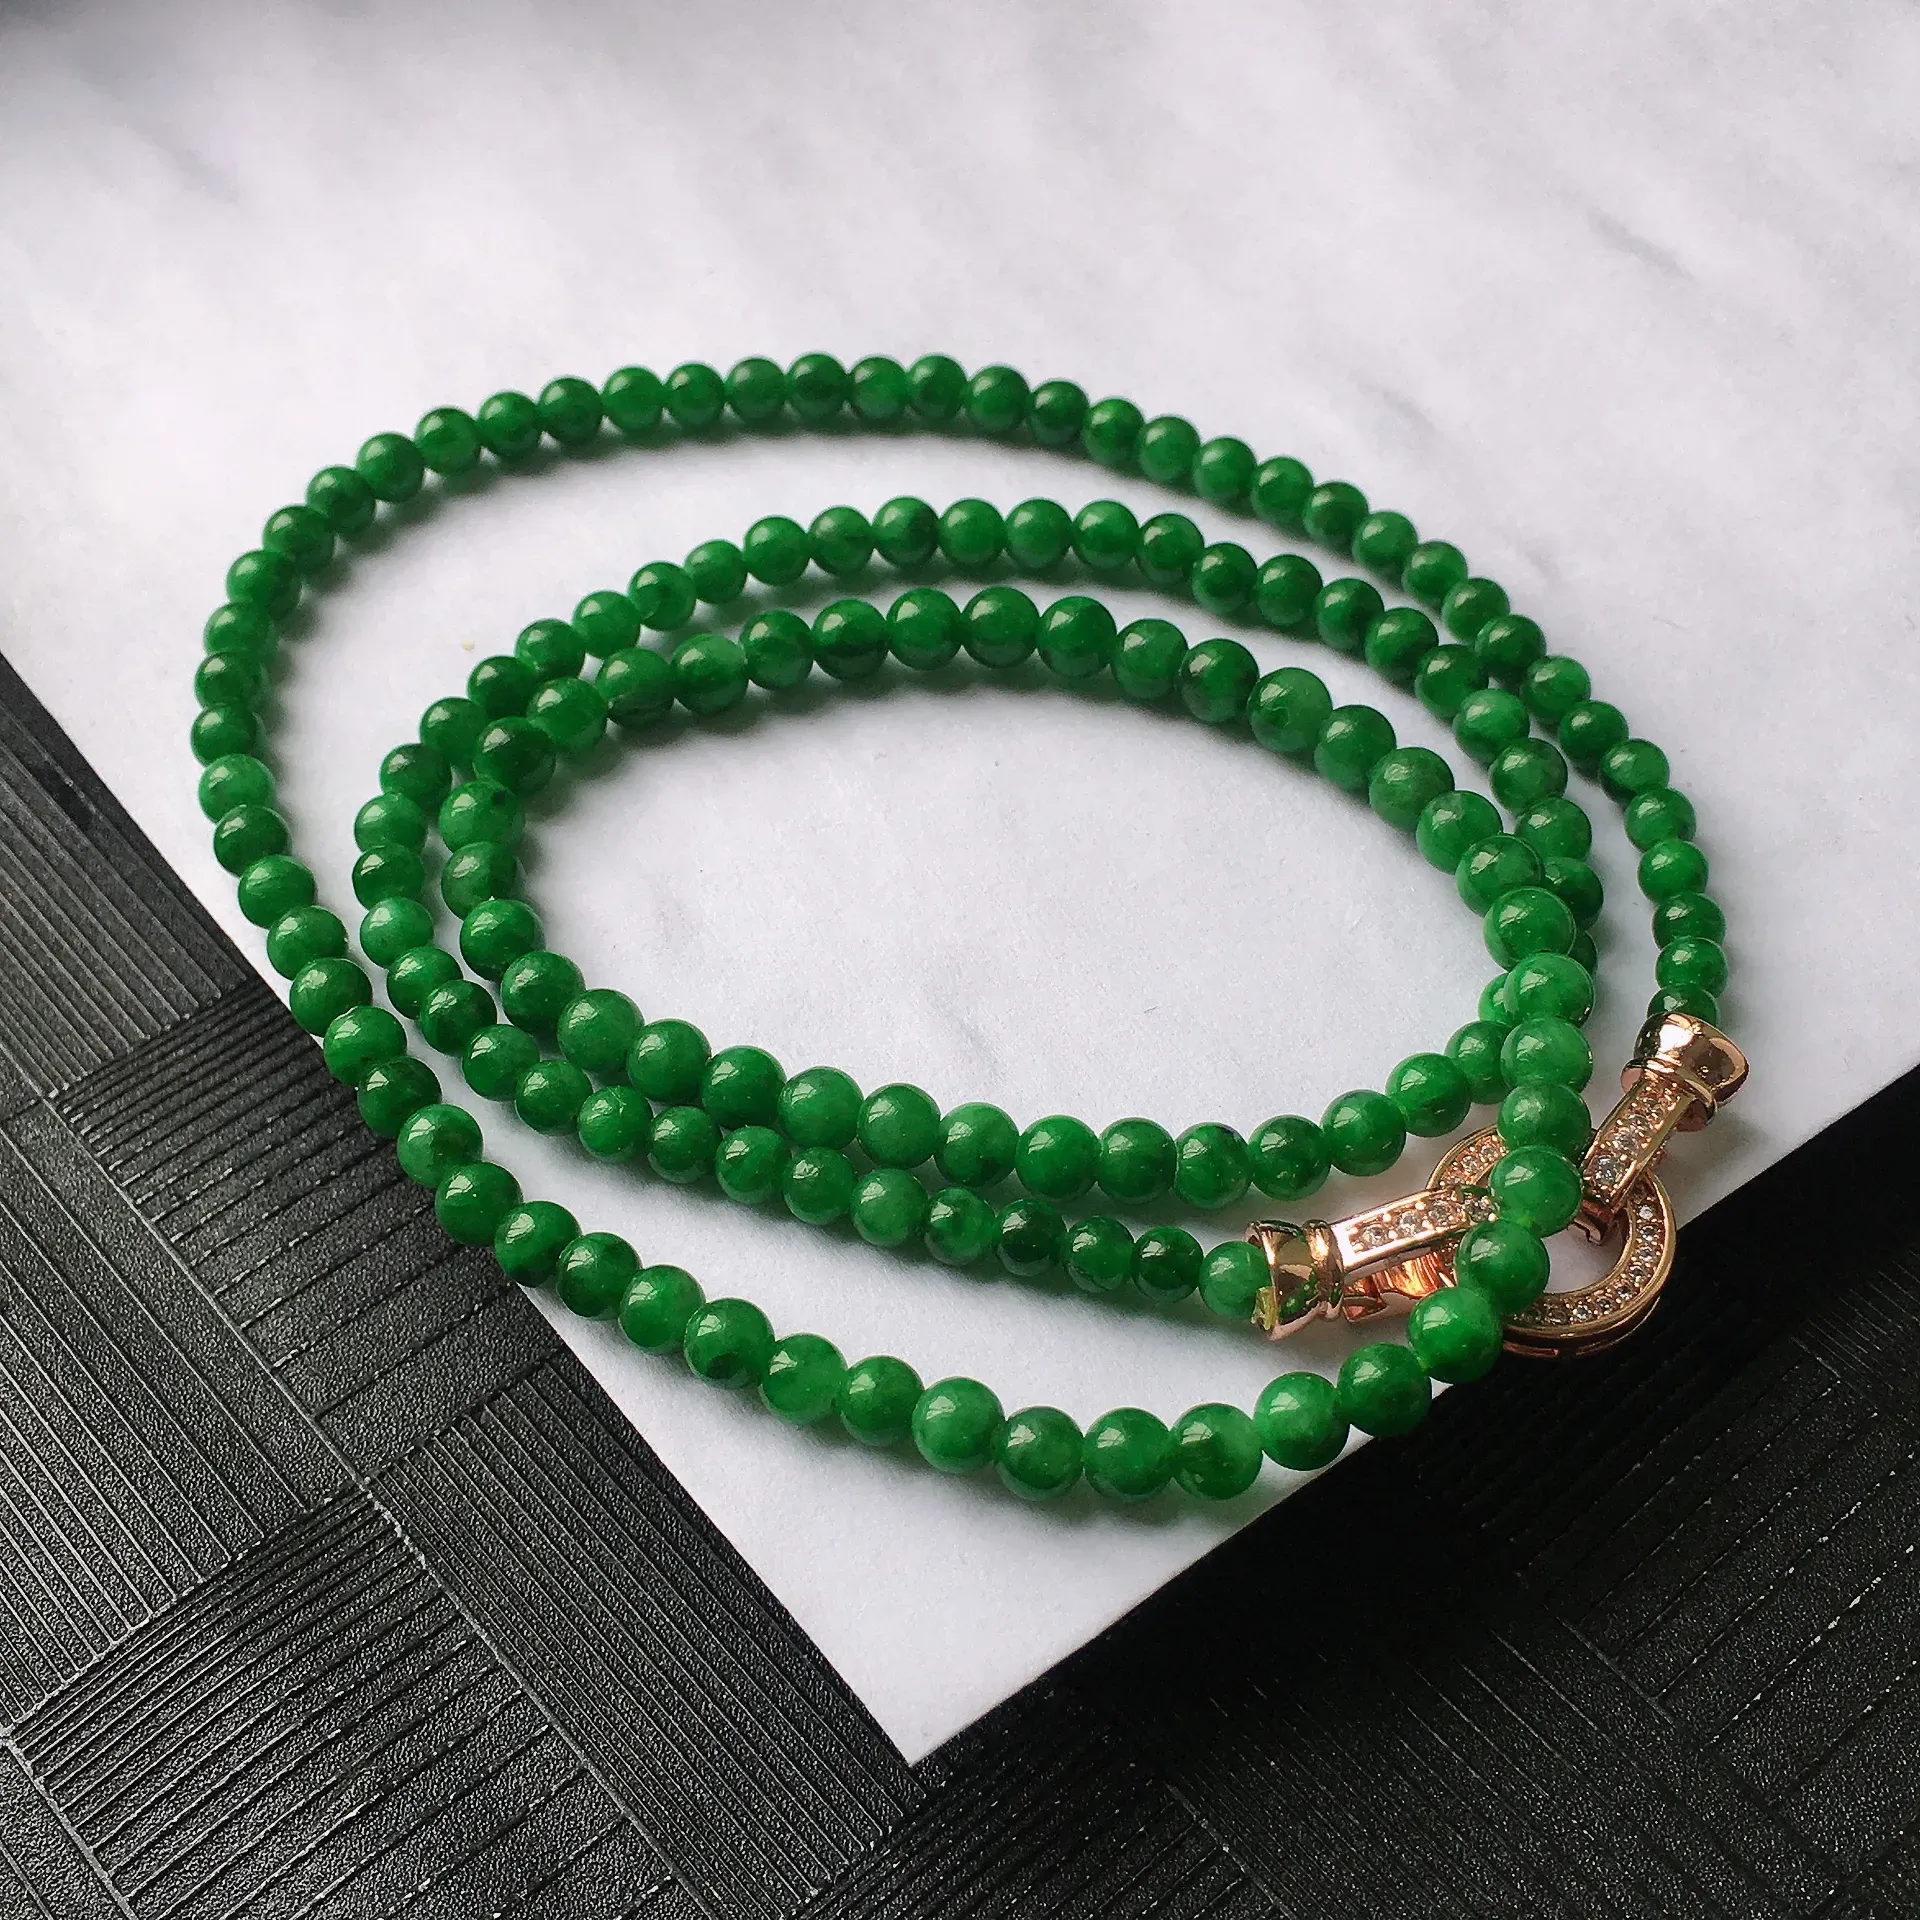 天然A货翡翠满阳绿圆珠项链，种水好玉质细腻温润，颜色漂亮。尺寸：取大 4.6mm 取小 3.6mm 项链周长：55.5cm